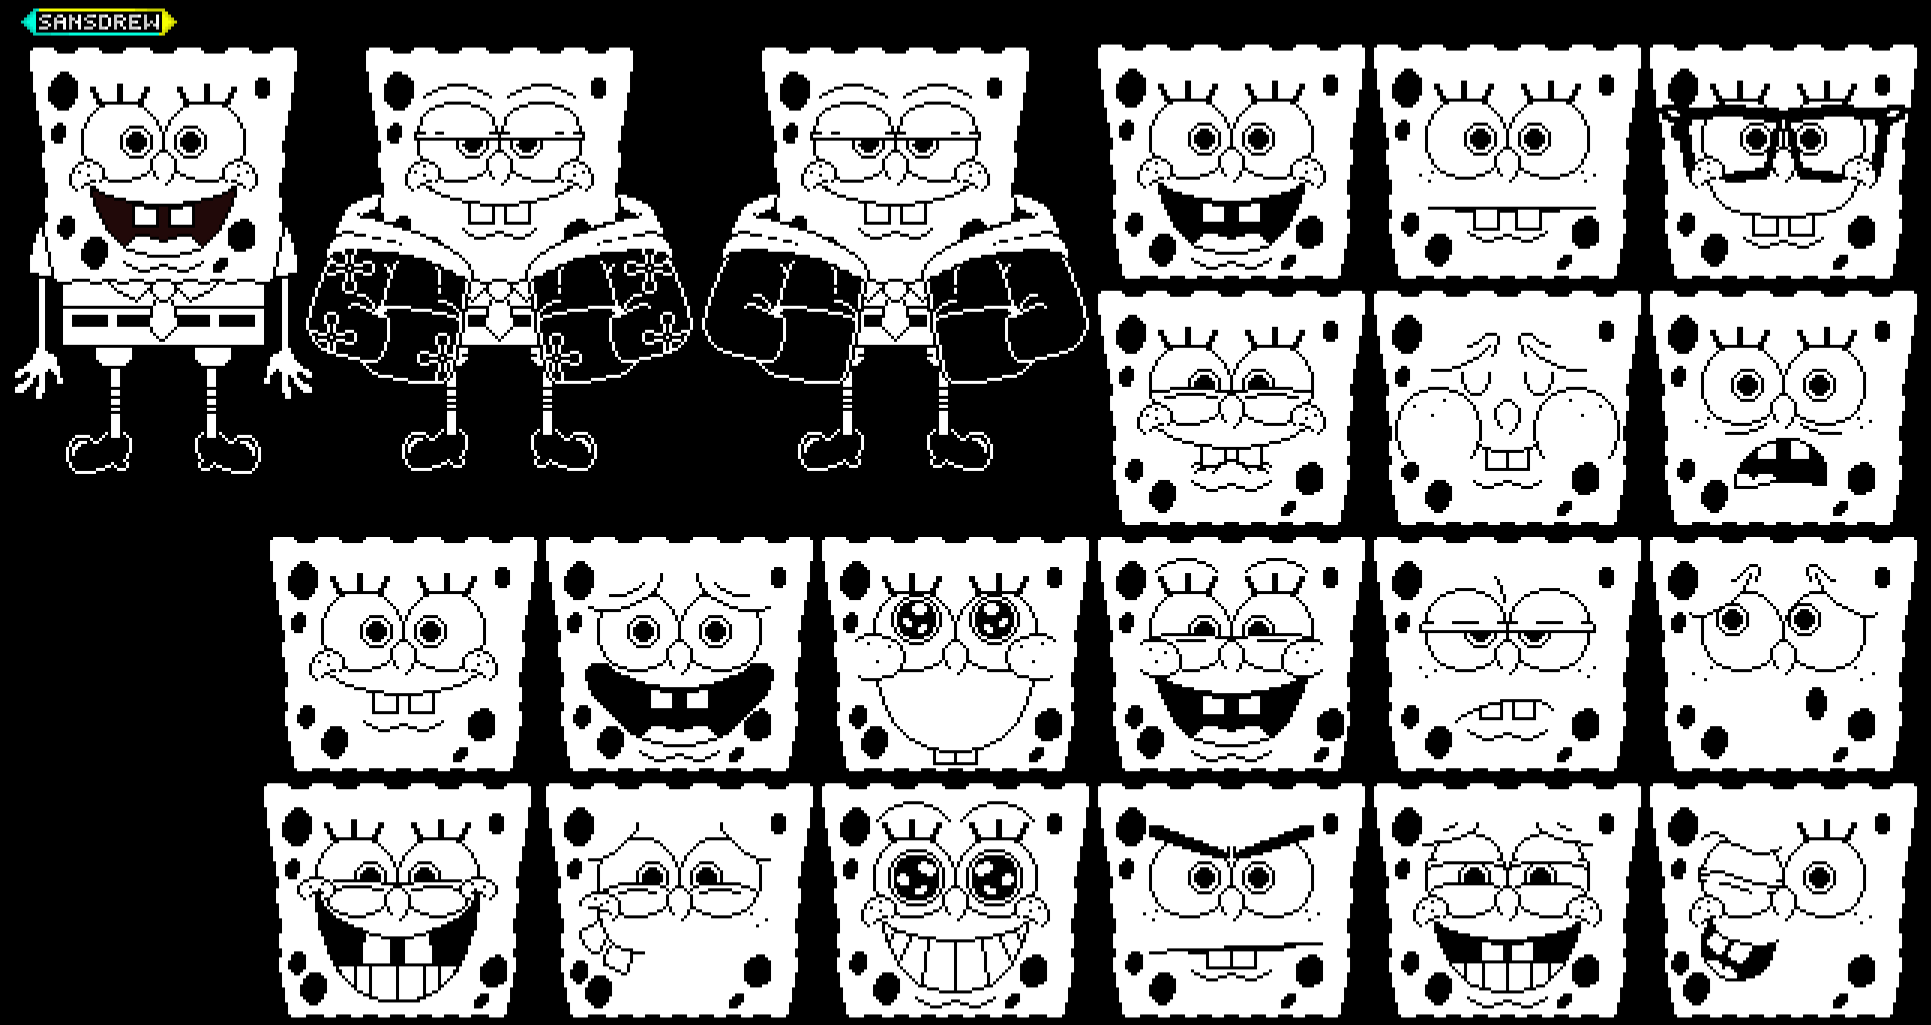 Pixilart - Sans Dialogue Faces by SpongeDrew